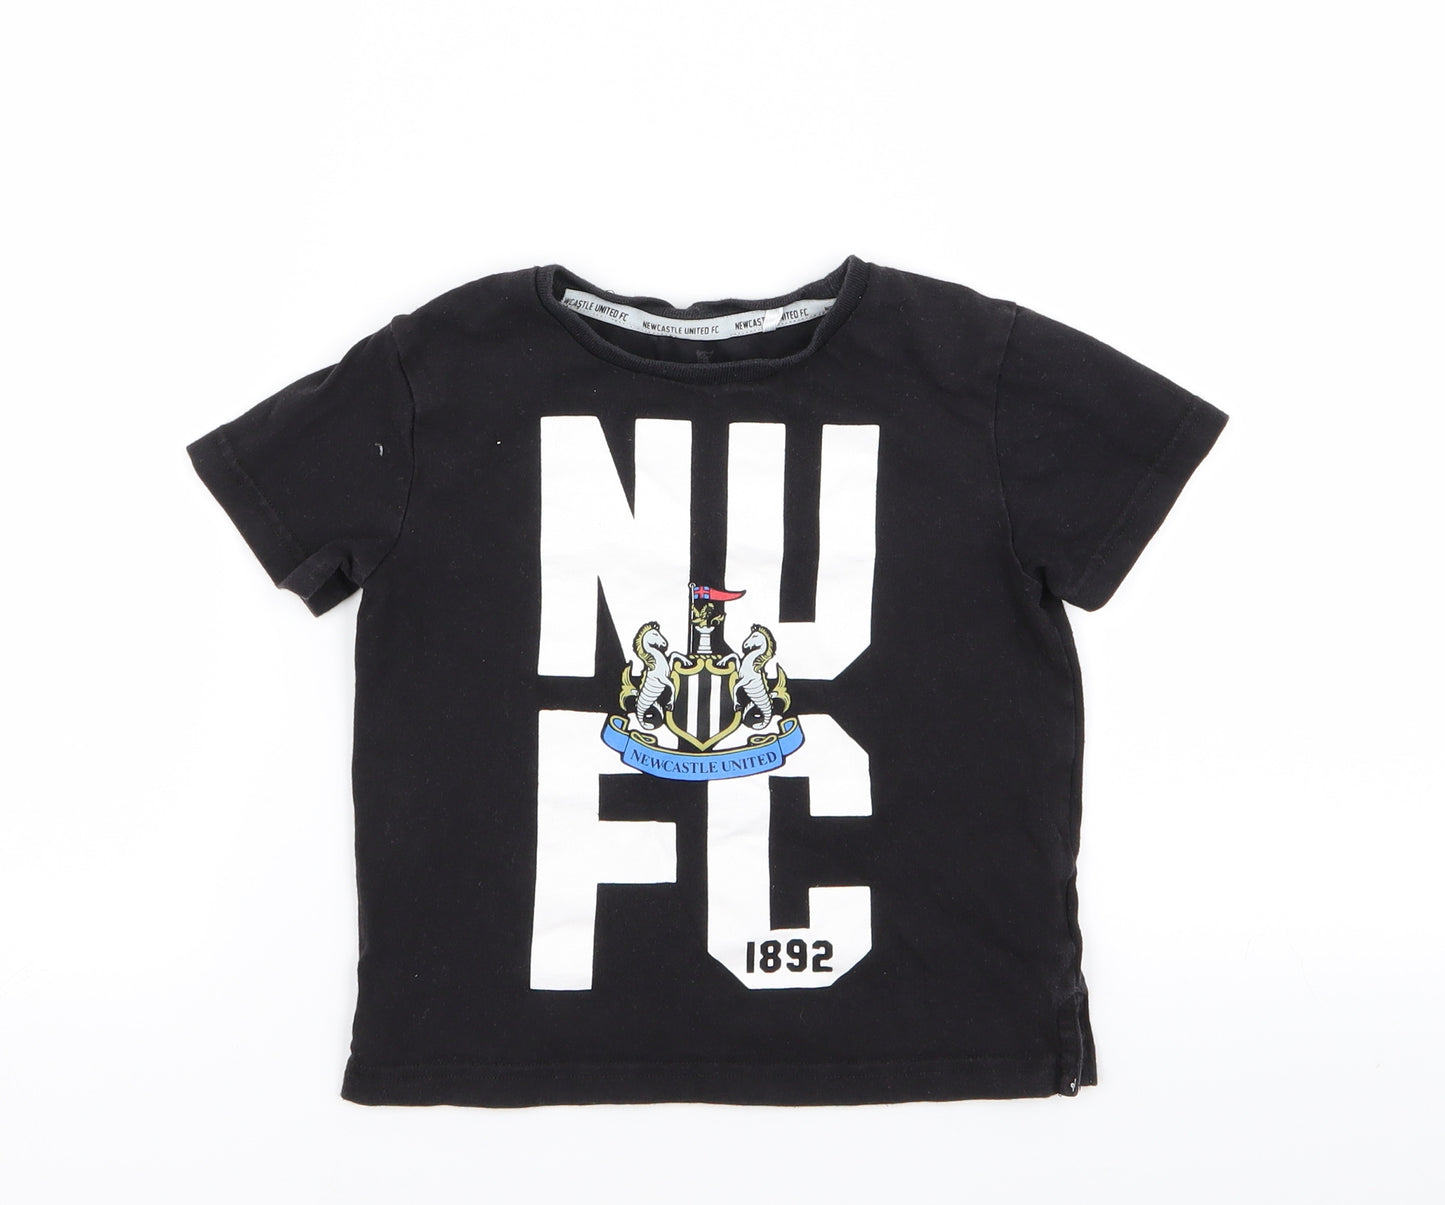 Newcastle United Boys Black   Basic T-Shirt Size 3-4 Years